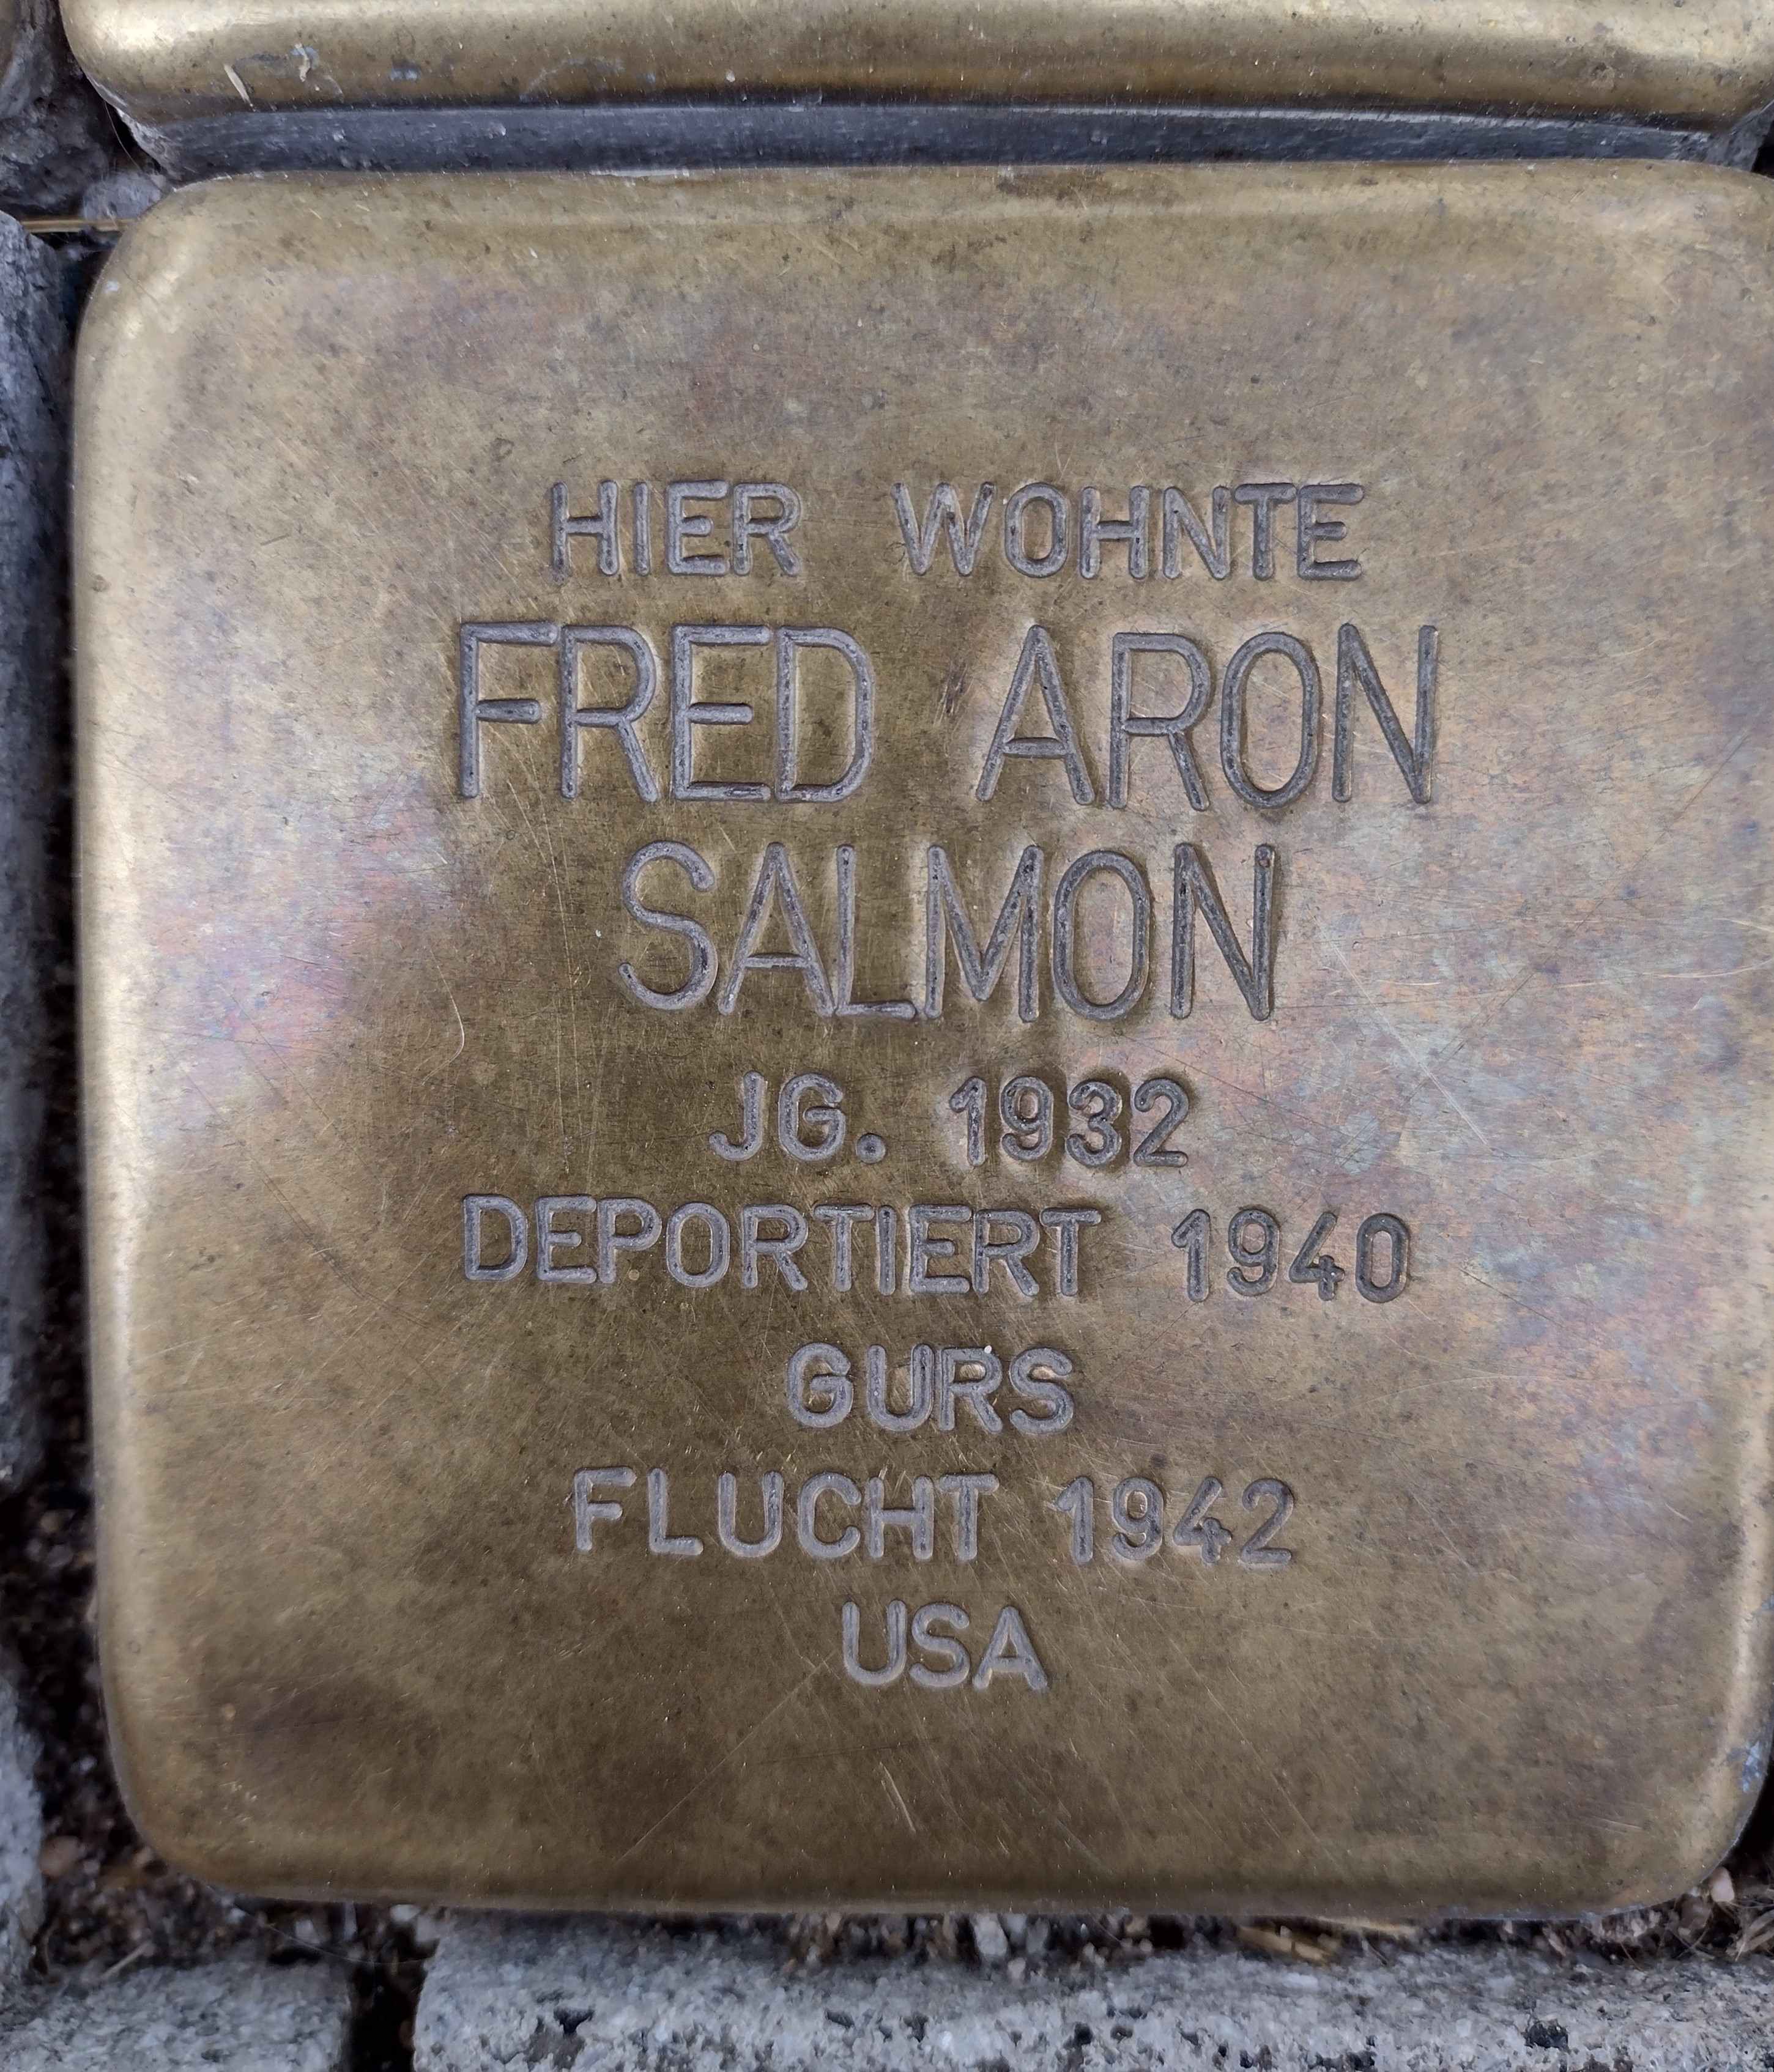 Stolperstein für Fred Aron Salmon in der Eisenbahnstraße 6, Foto: Matthias Pöhler